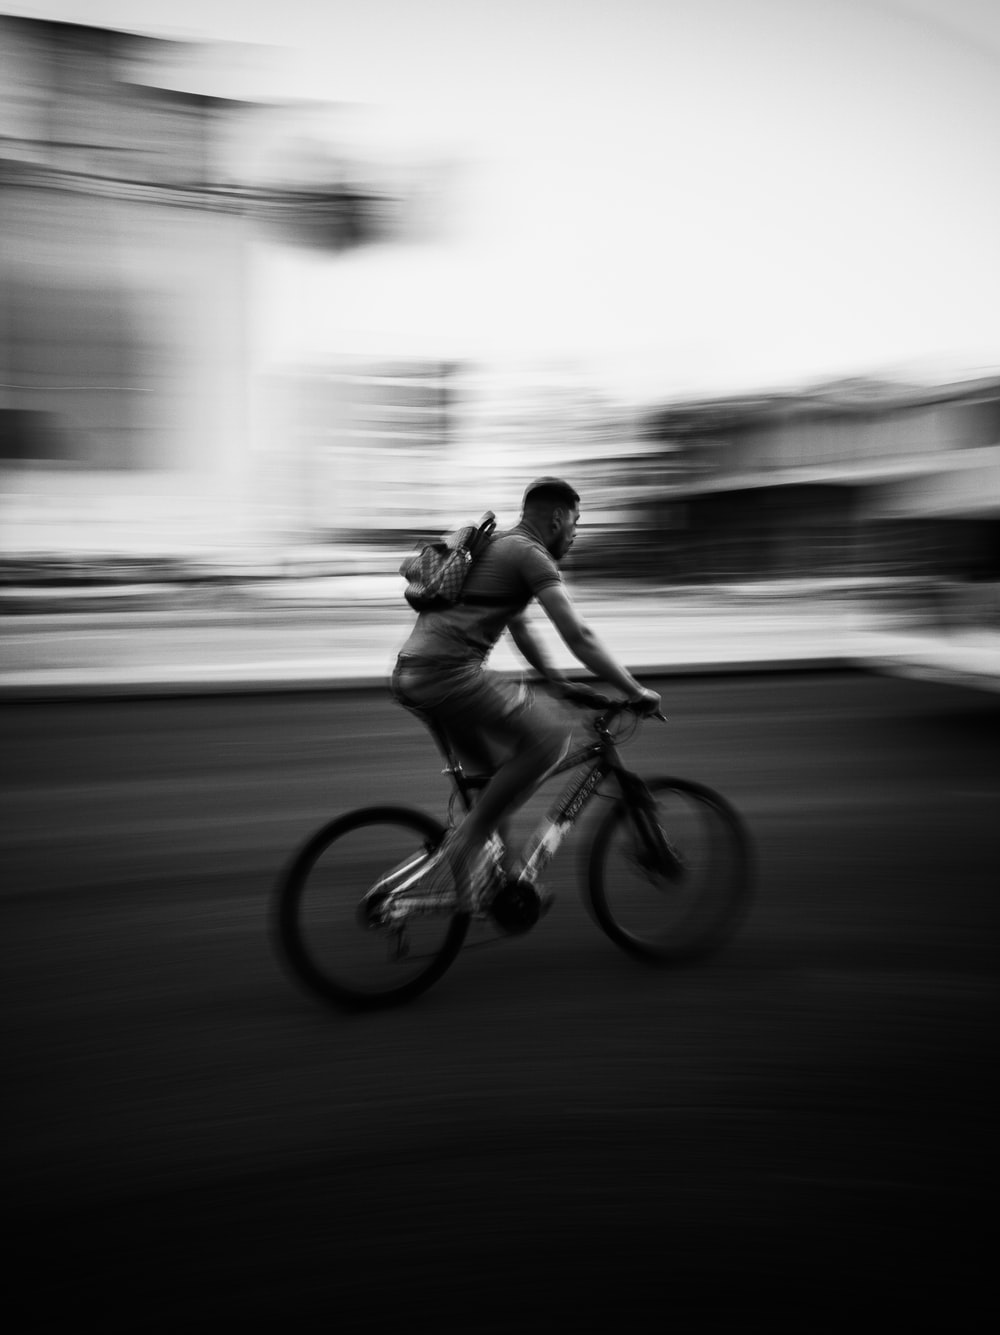 简约小清新自行车男子照片